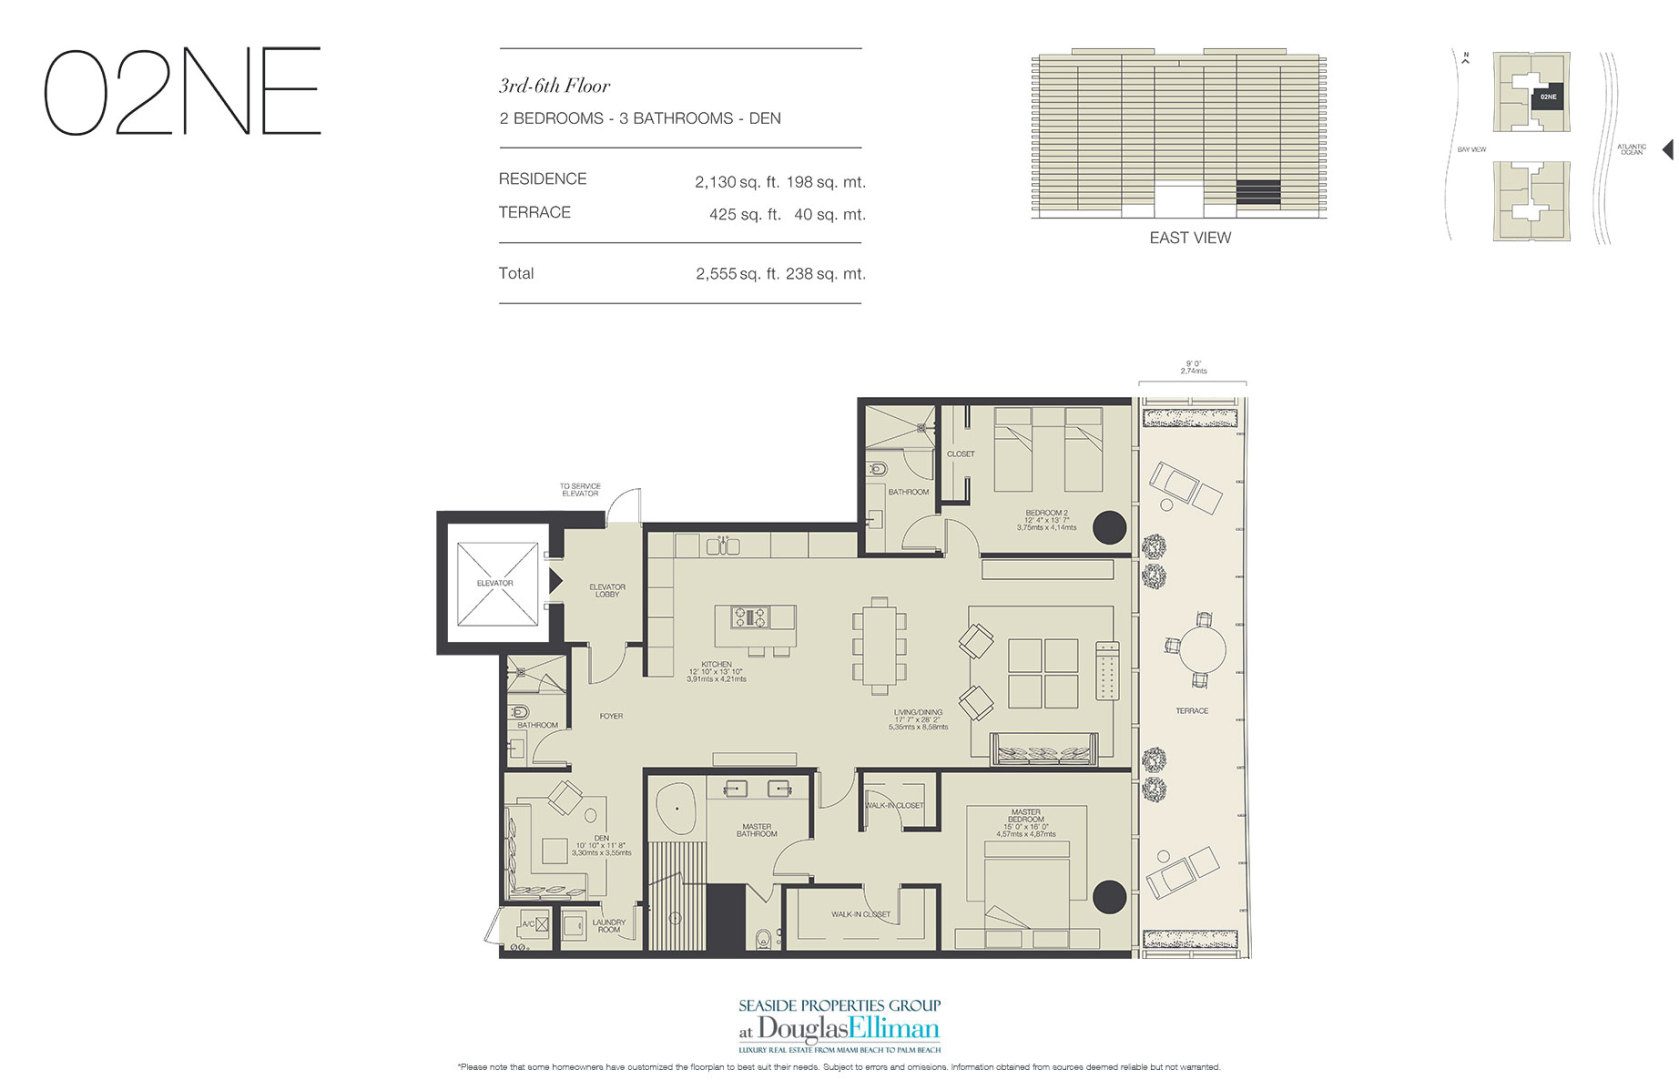 The 02NE Floorplan for Oceana Bal Harbour, Luxury Oceanfront Condos in Bal Harbour, Florida 33154